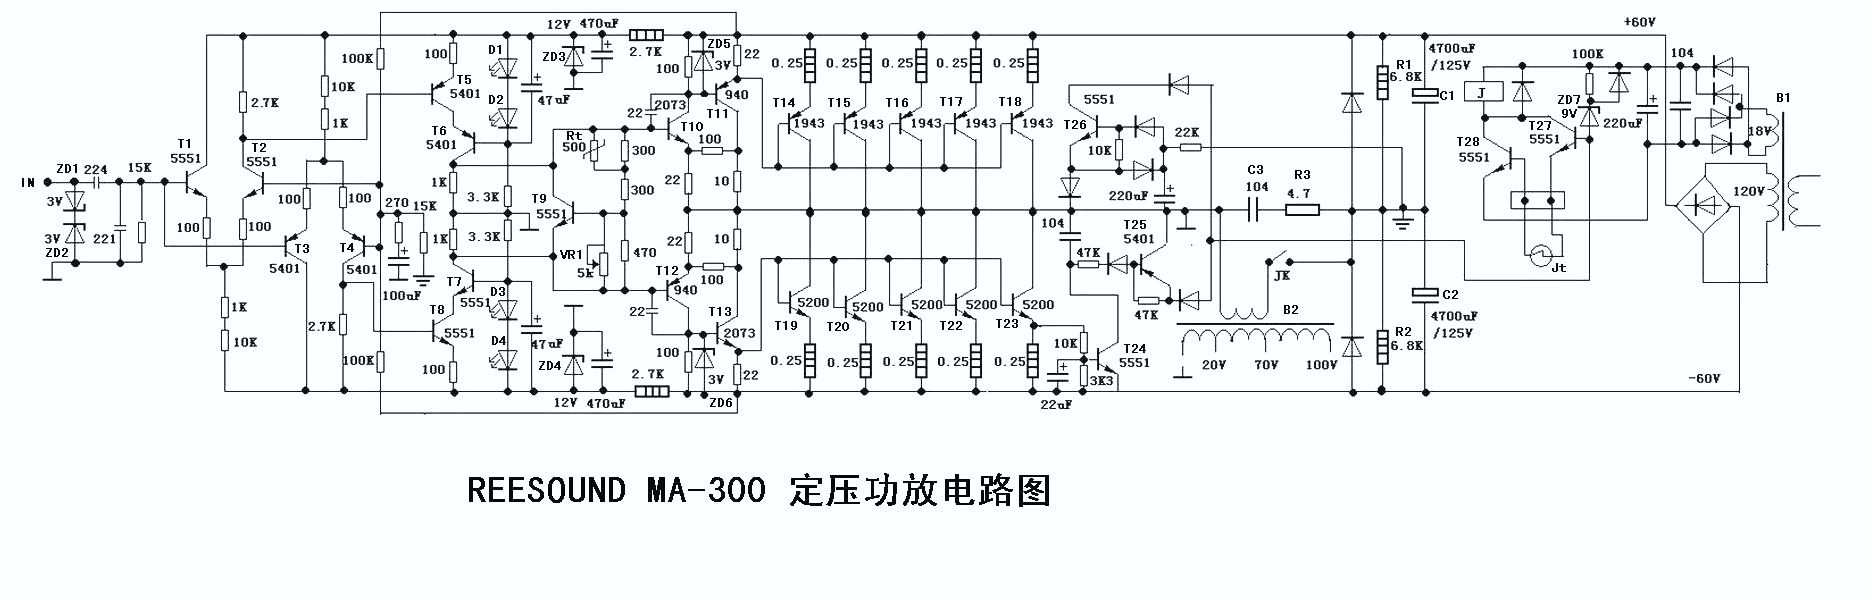 Sharp sound of constant pressure REESOUND MA-300 power amplifier schematic